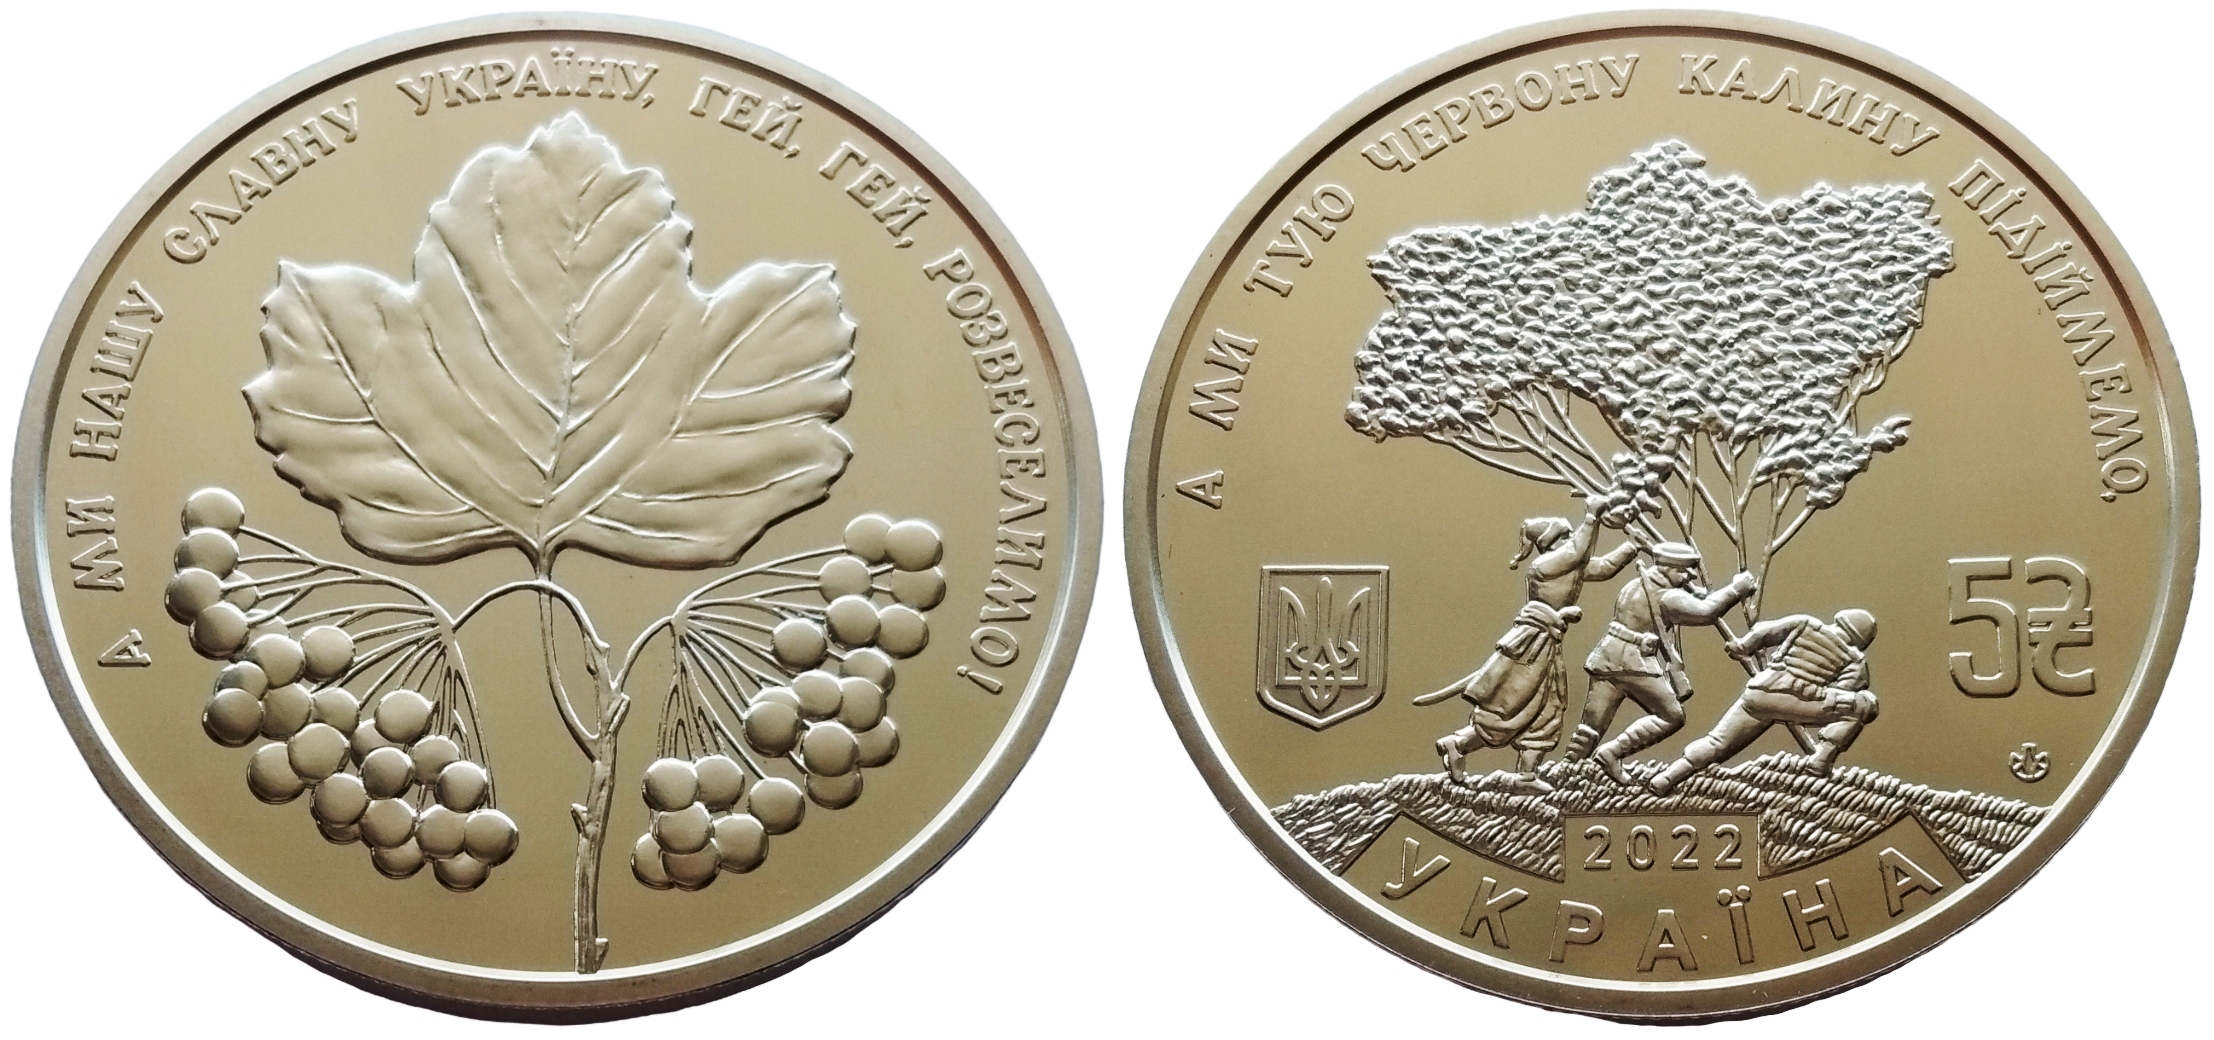 5 гривен в рублях на сегодня. Украина 2 гривны 2022. Украина 5 гривен 2022. 10 Гривен монета. 5 Гривен монета.